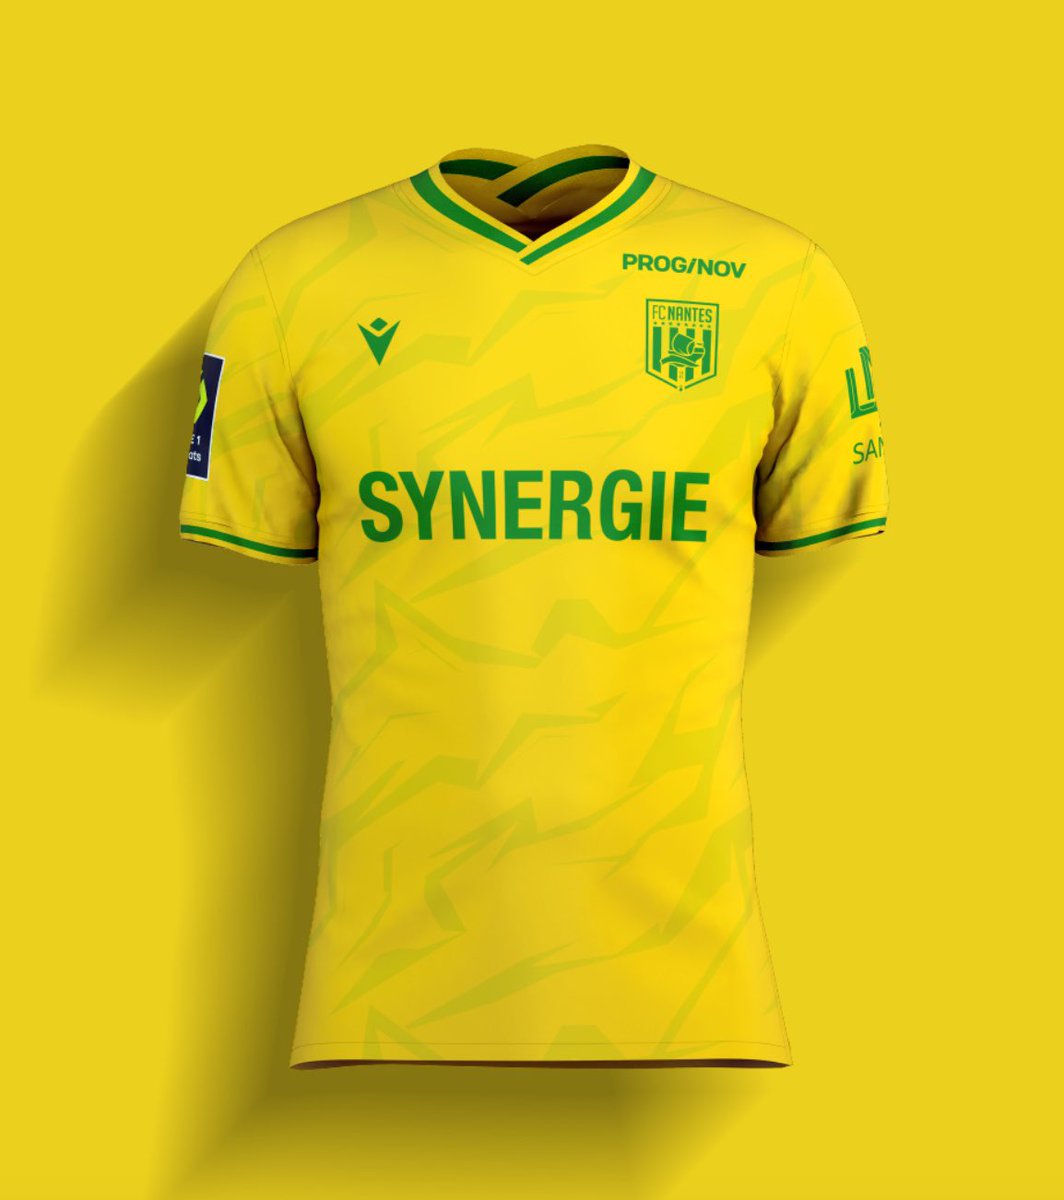 ✍️ Notre designer @ArobaseRito a poussé le concept jusqu'au bout avec le LOGO REBRANDER ET le SPONSOR assorti aux couleurs du maillot ! ⚡ Combien d'étoiles pour ce maillot, sur 5 ⭐ ? #Ligue1 #FCNantes